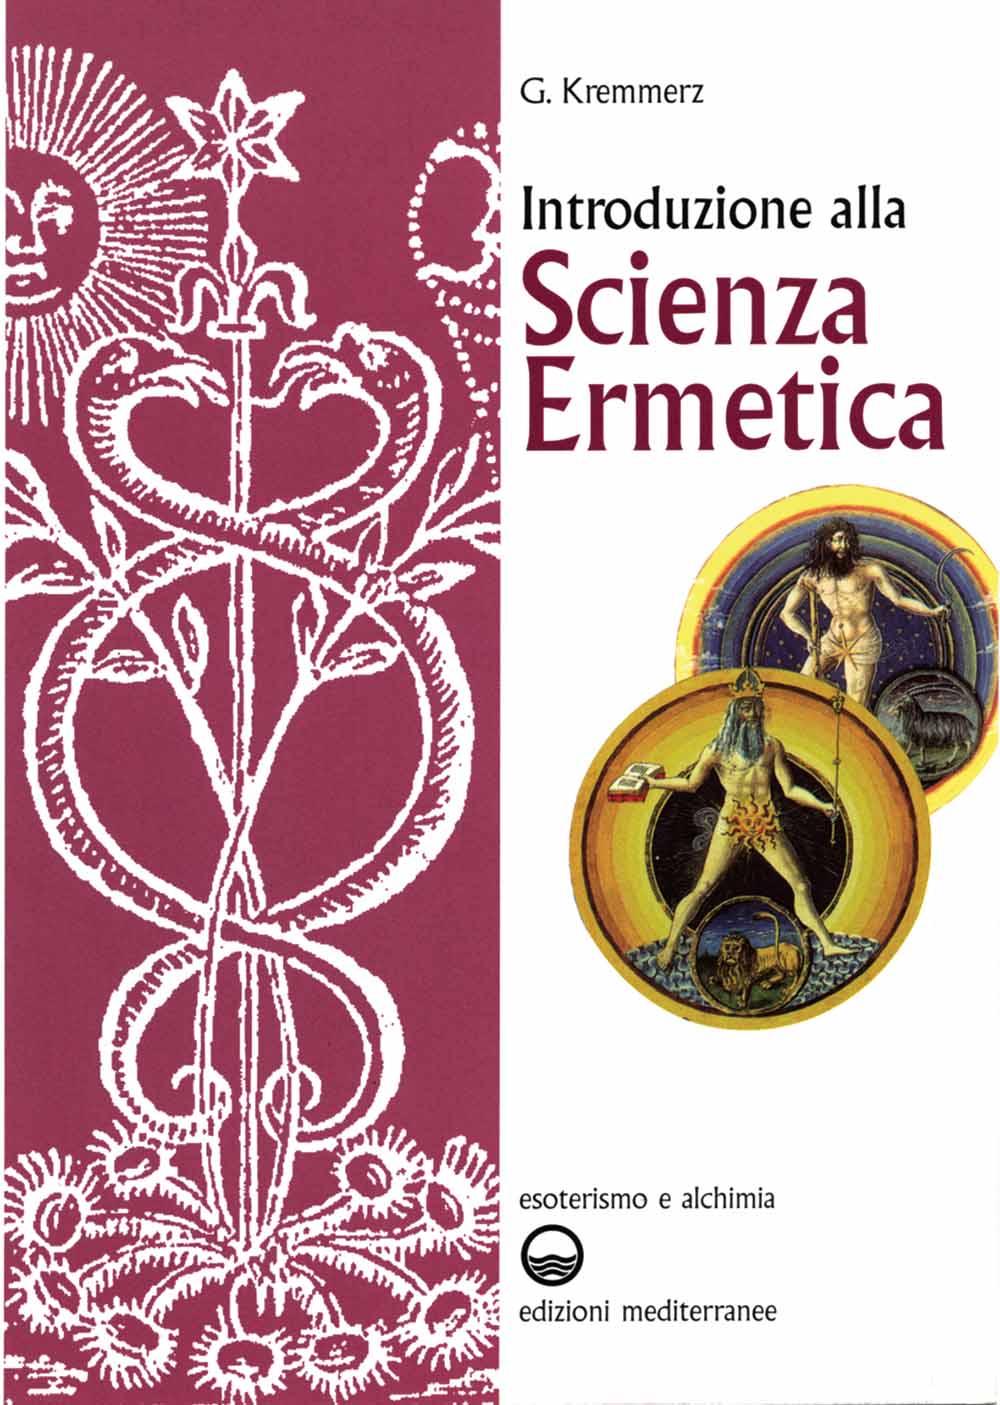 Libri Giuliano Kremmerz - Introduzione Alla Scienza Ermetica NUOVO SIGILLATO, EDIZIONE DEL 30/09/1983 SUBITO DISPONIBILE